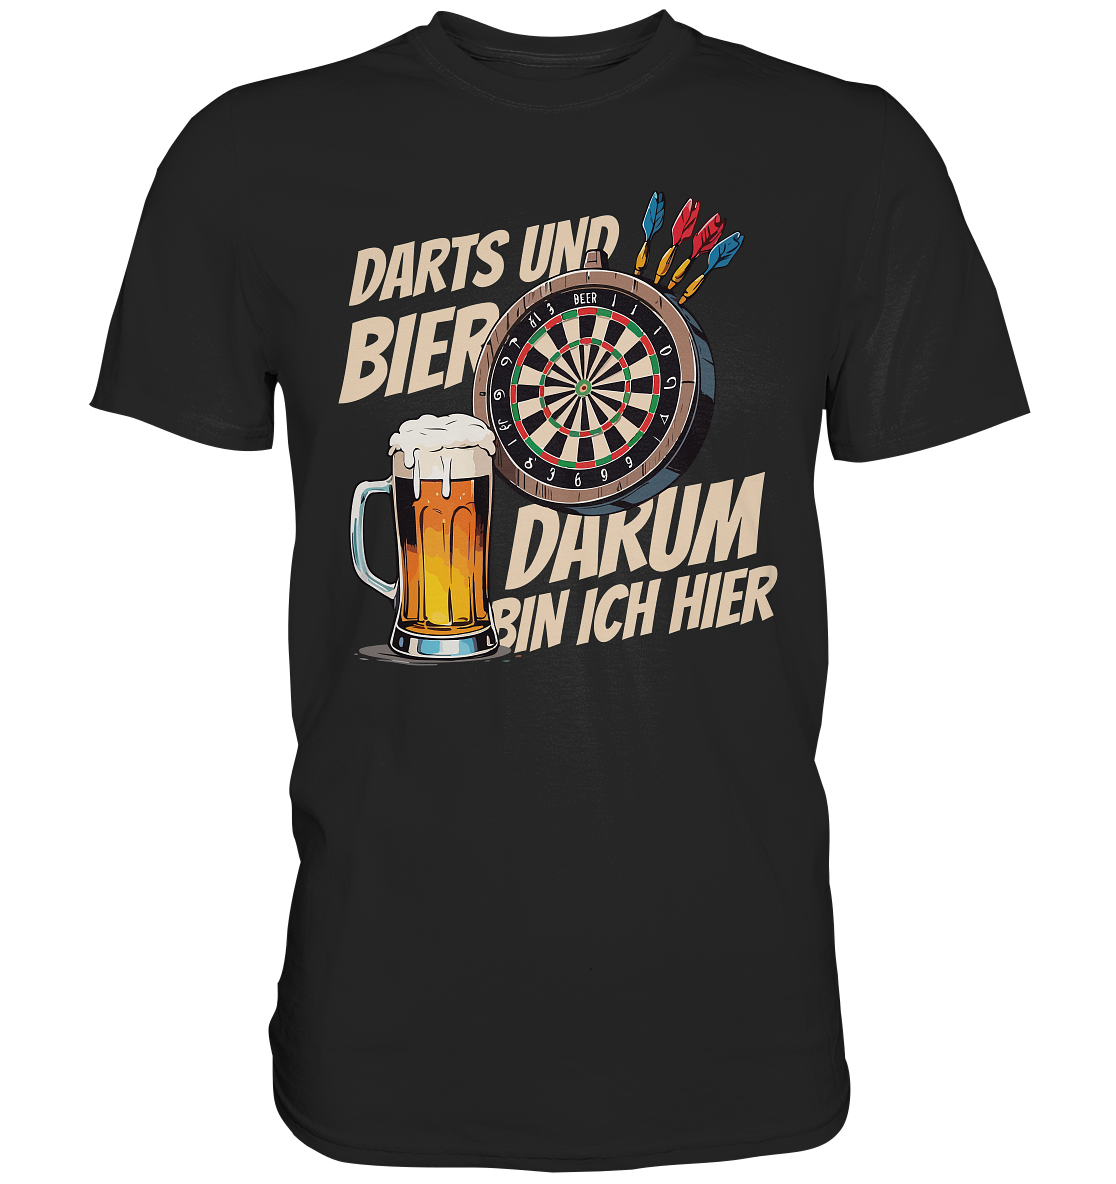 Lustiges Darts T-Shirt mit Bier-Motiv – Ideales Geschenk